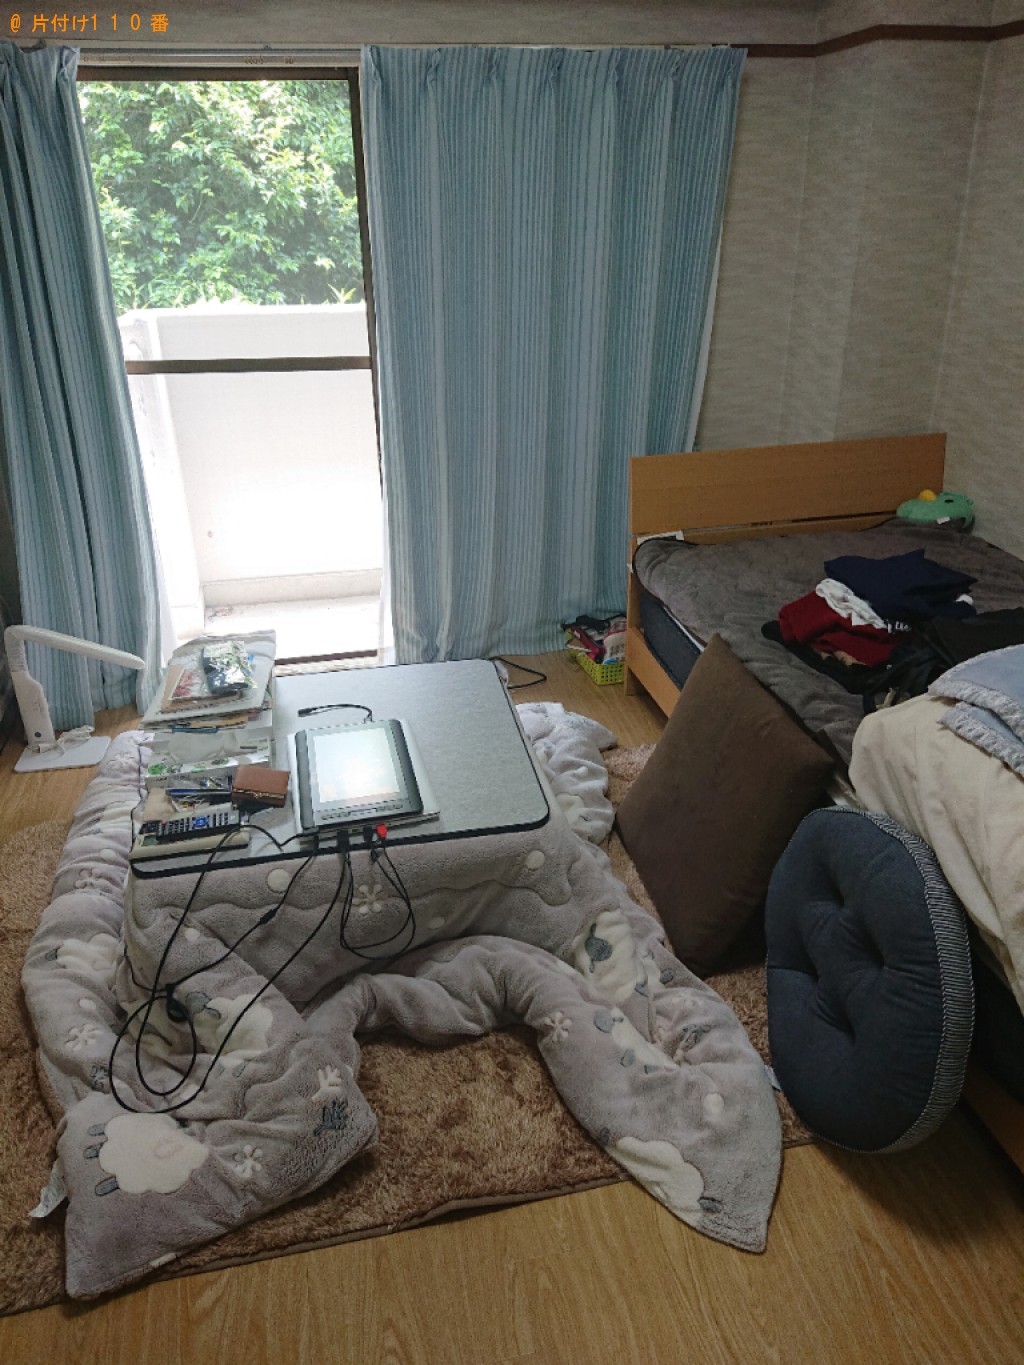 【京都市伏見区】部屋の整理整頓と掃除、掃除で出た一般ごみの回収